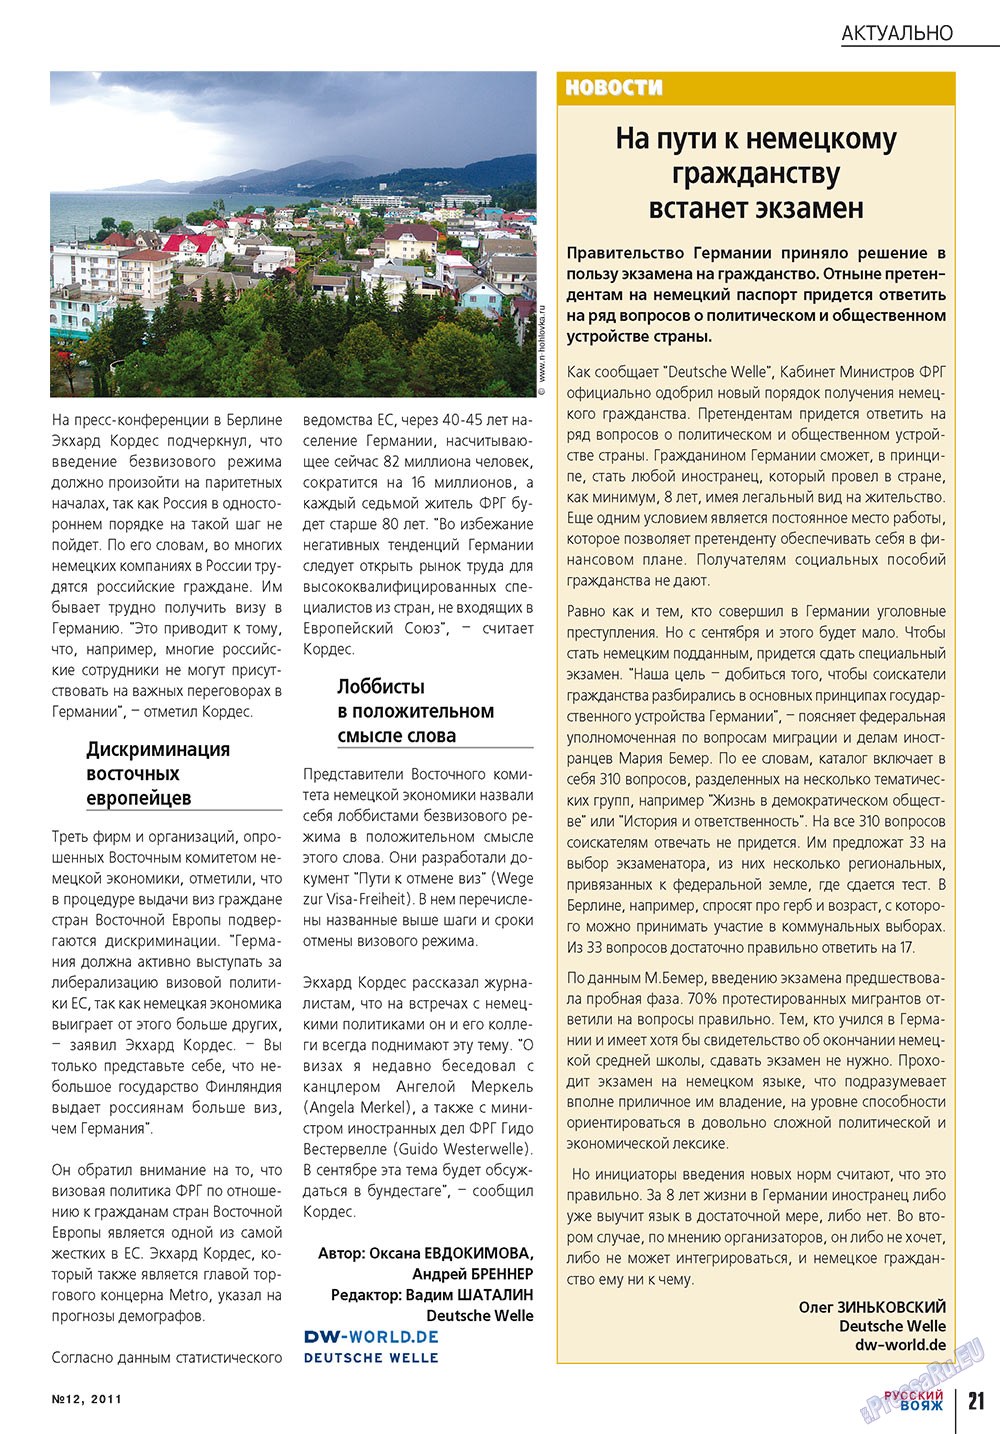 Русский вояж (журнал). 2011 год, номер 12, стр. 21